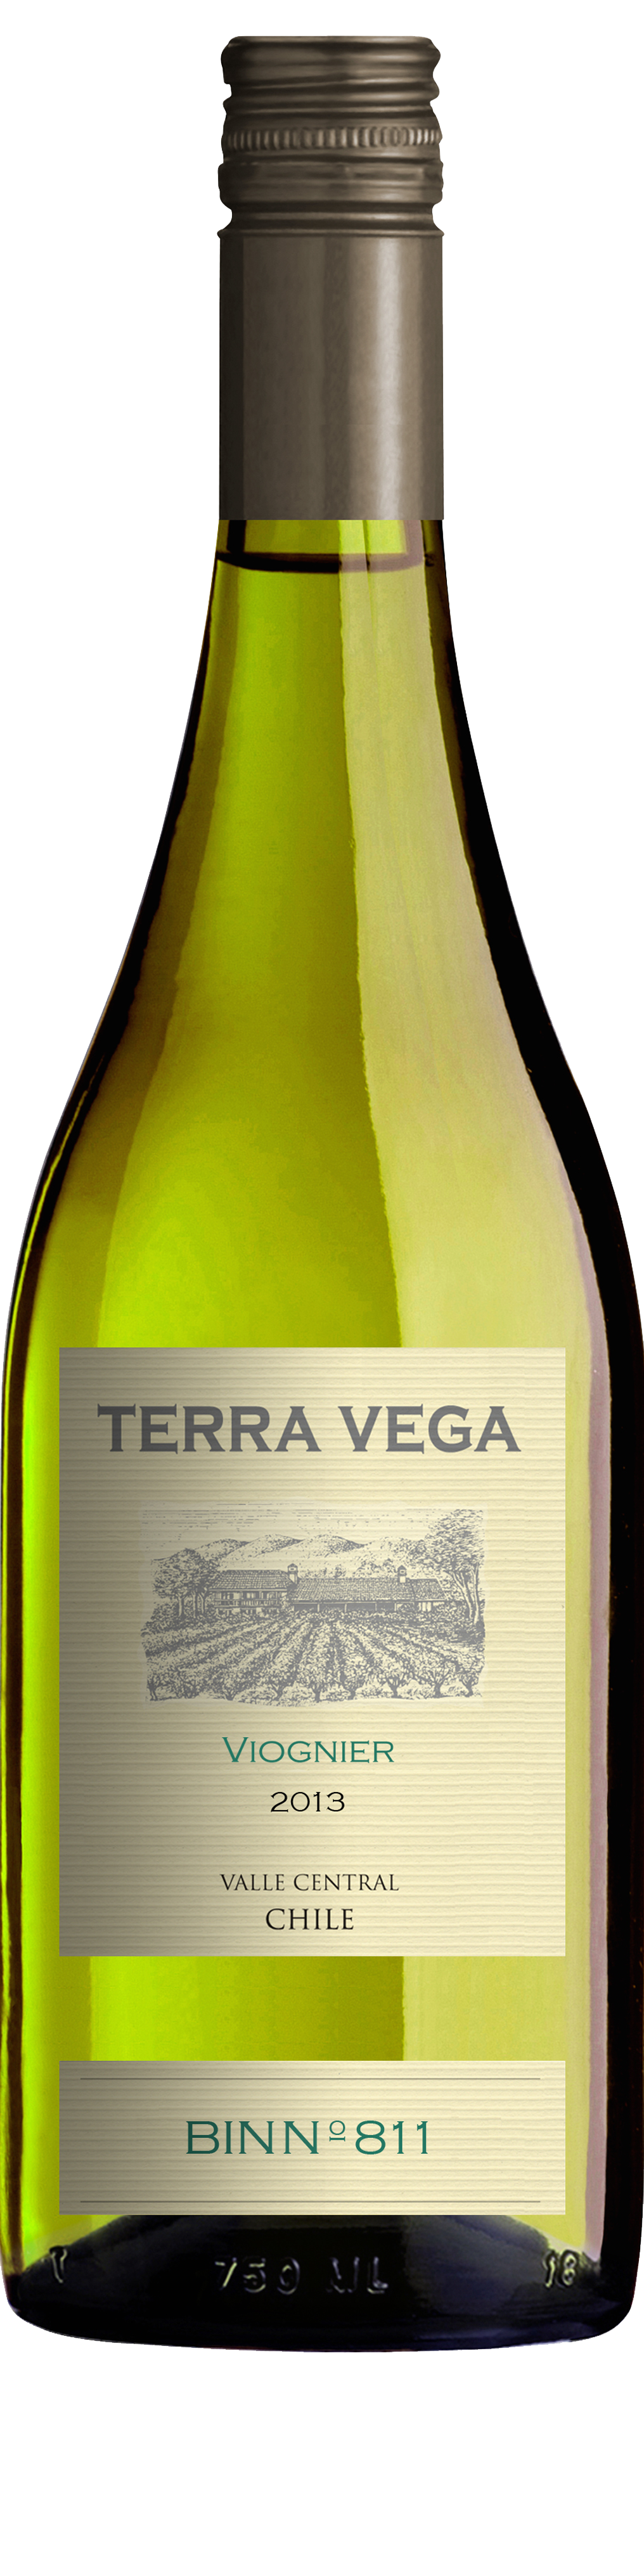 Bottle shot of 2013 Viognier Terra Vega